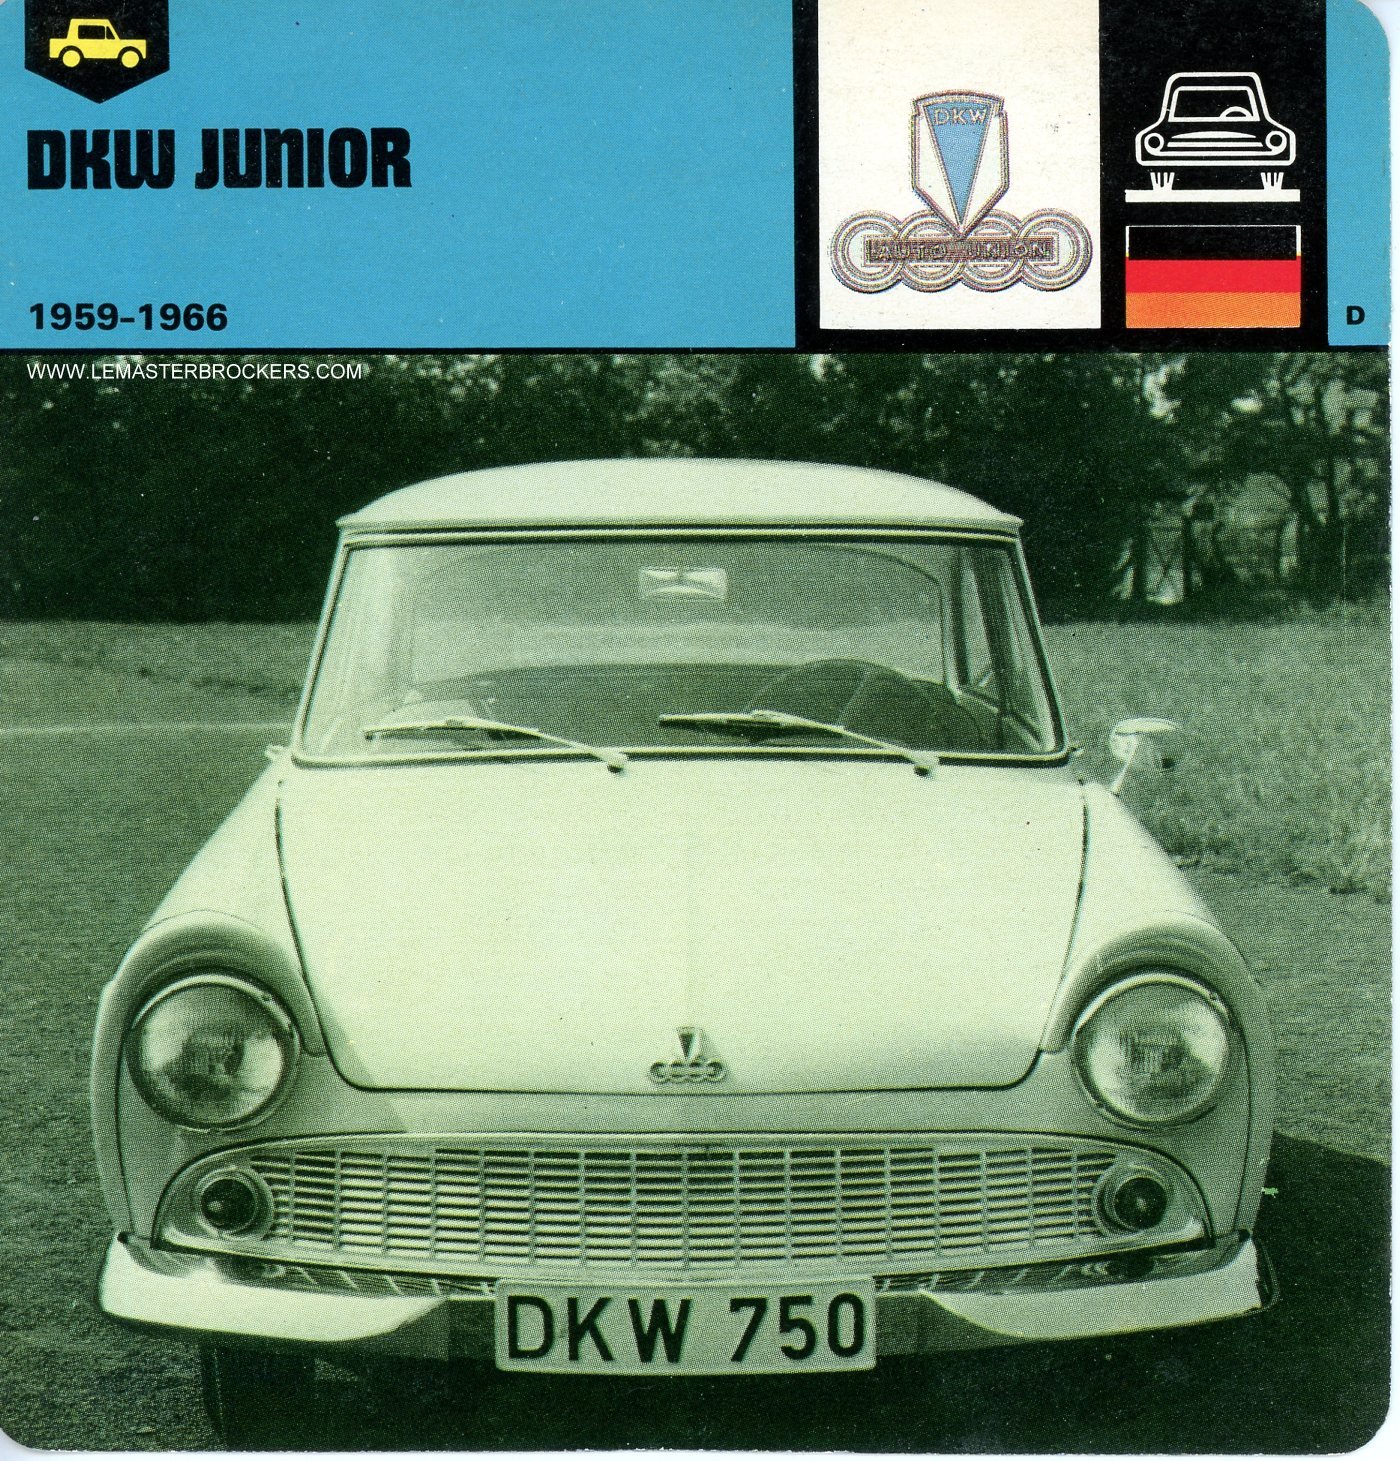 FICHE DKW JUNIOR 1959-1966